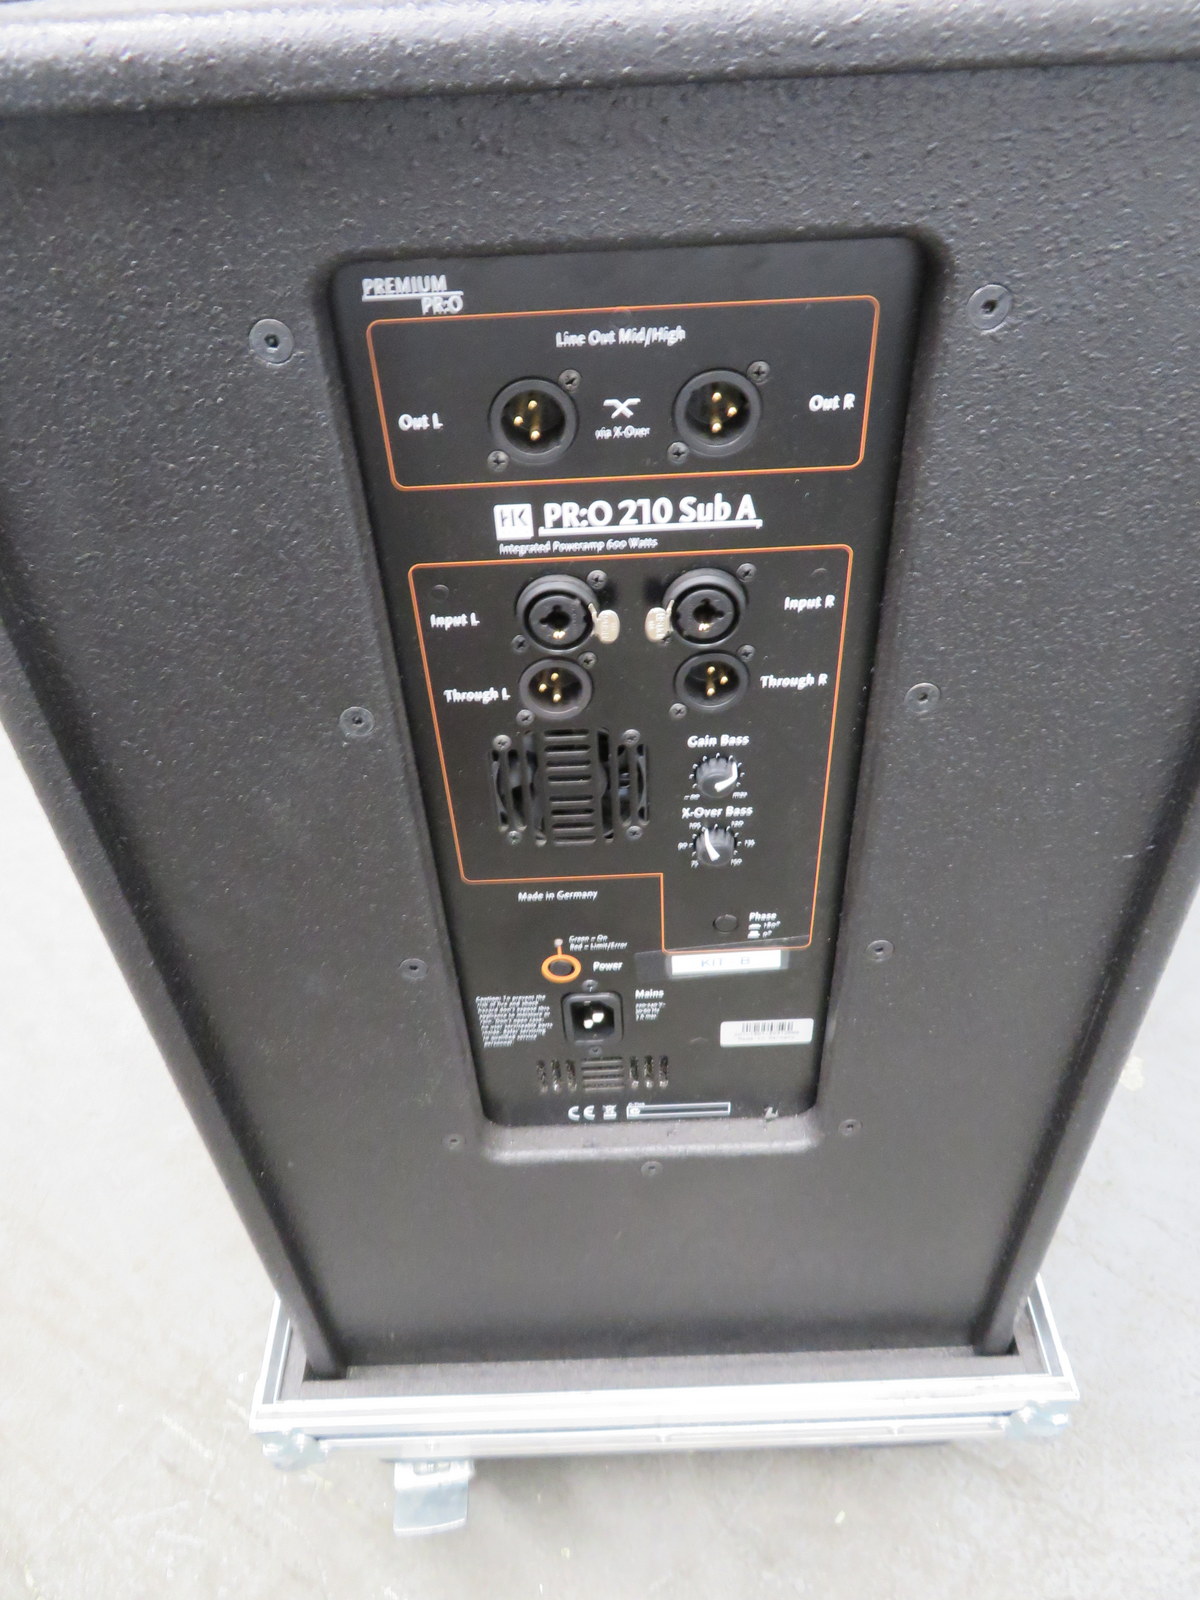 HK Audio Premium PR:O 210 Sub A. Serial number:20312588. - Image 5 of 7